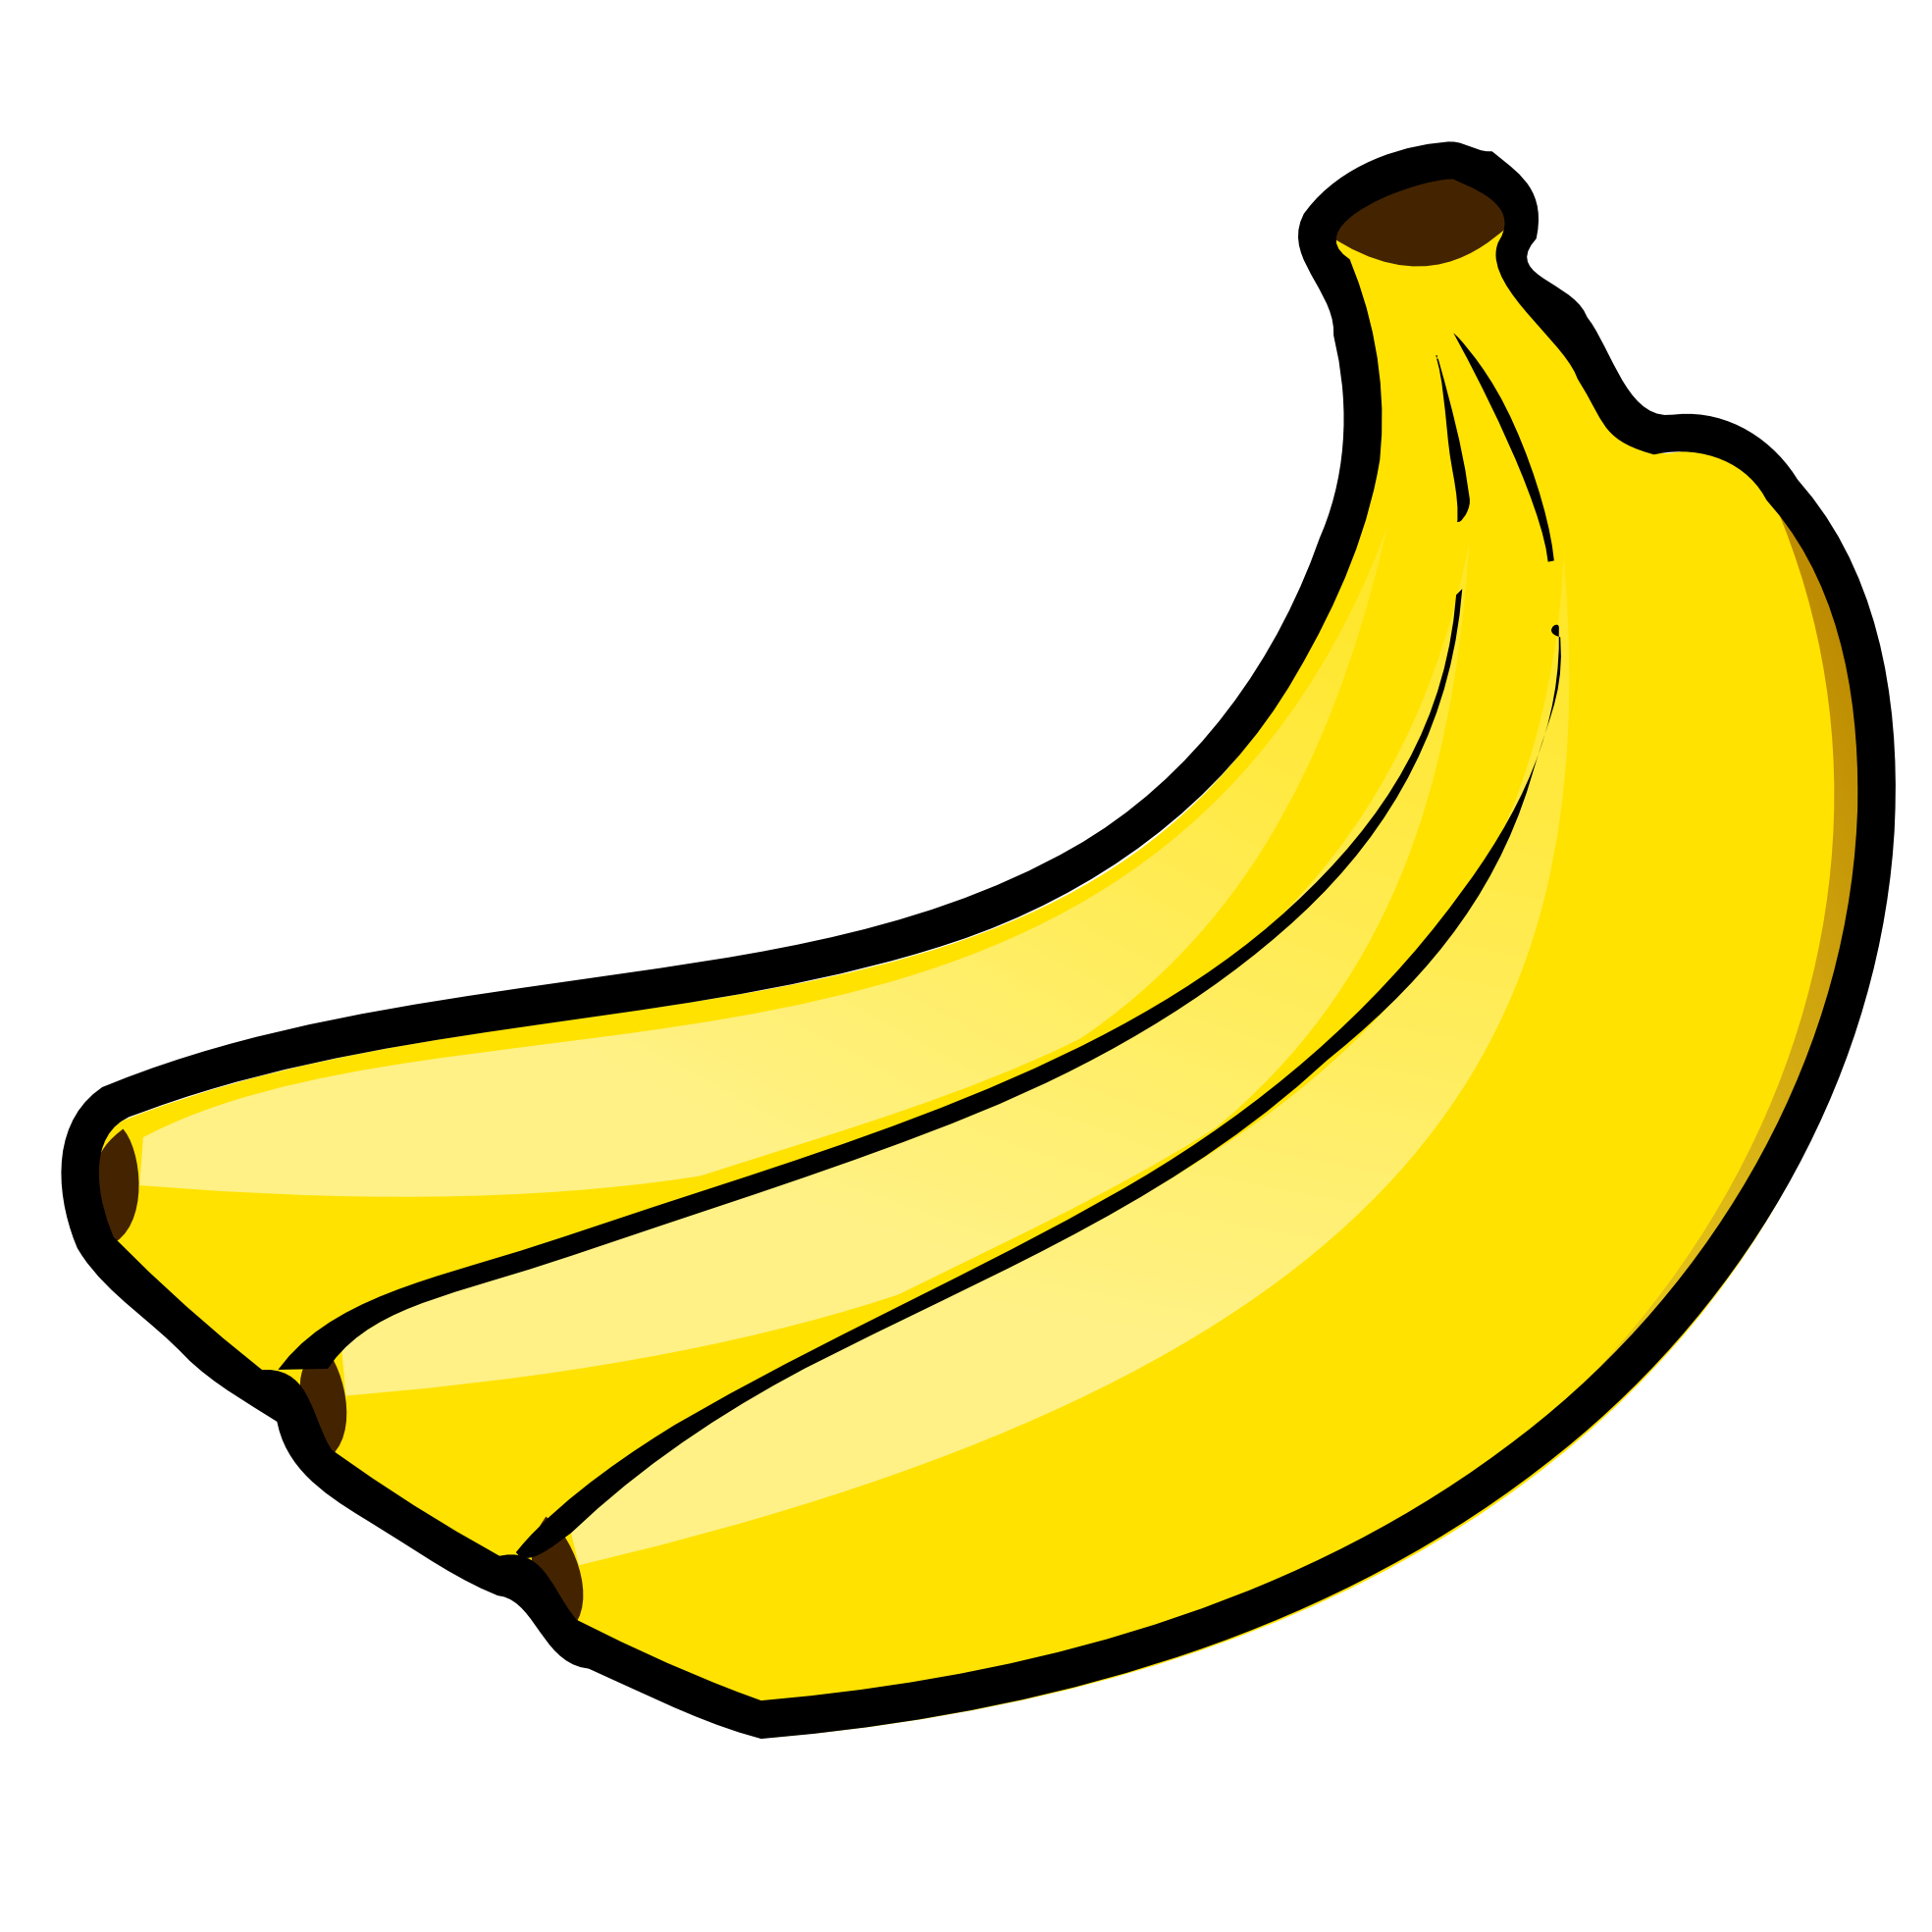 Banana Vector | An Images Hub